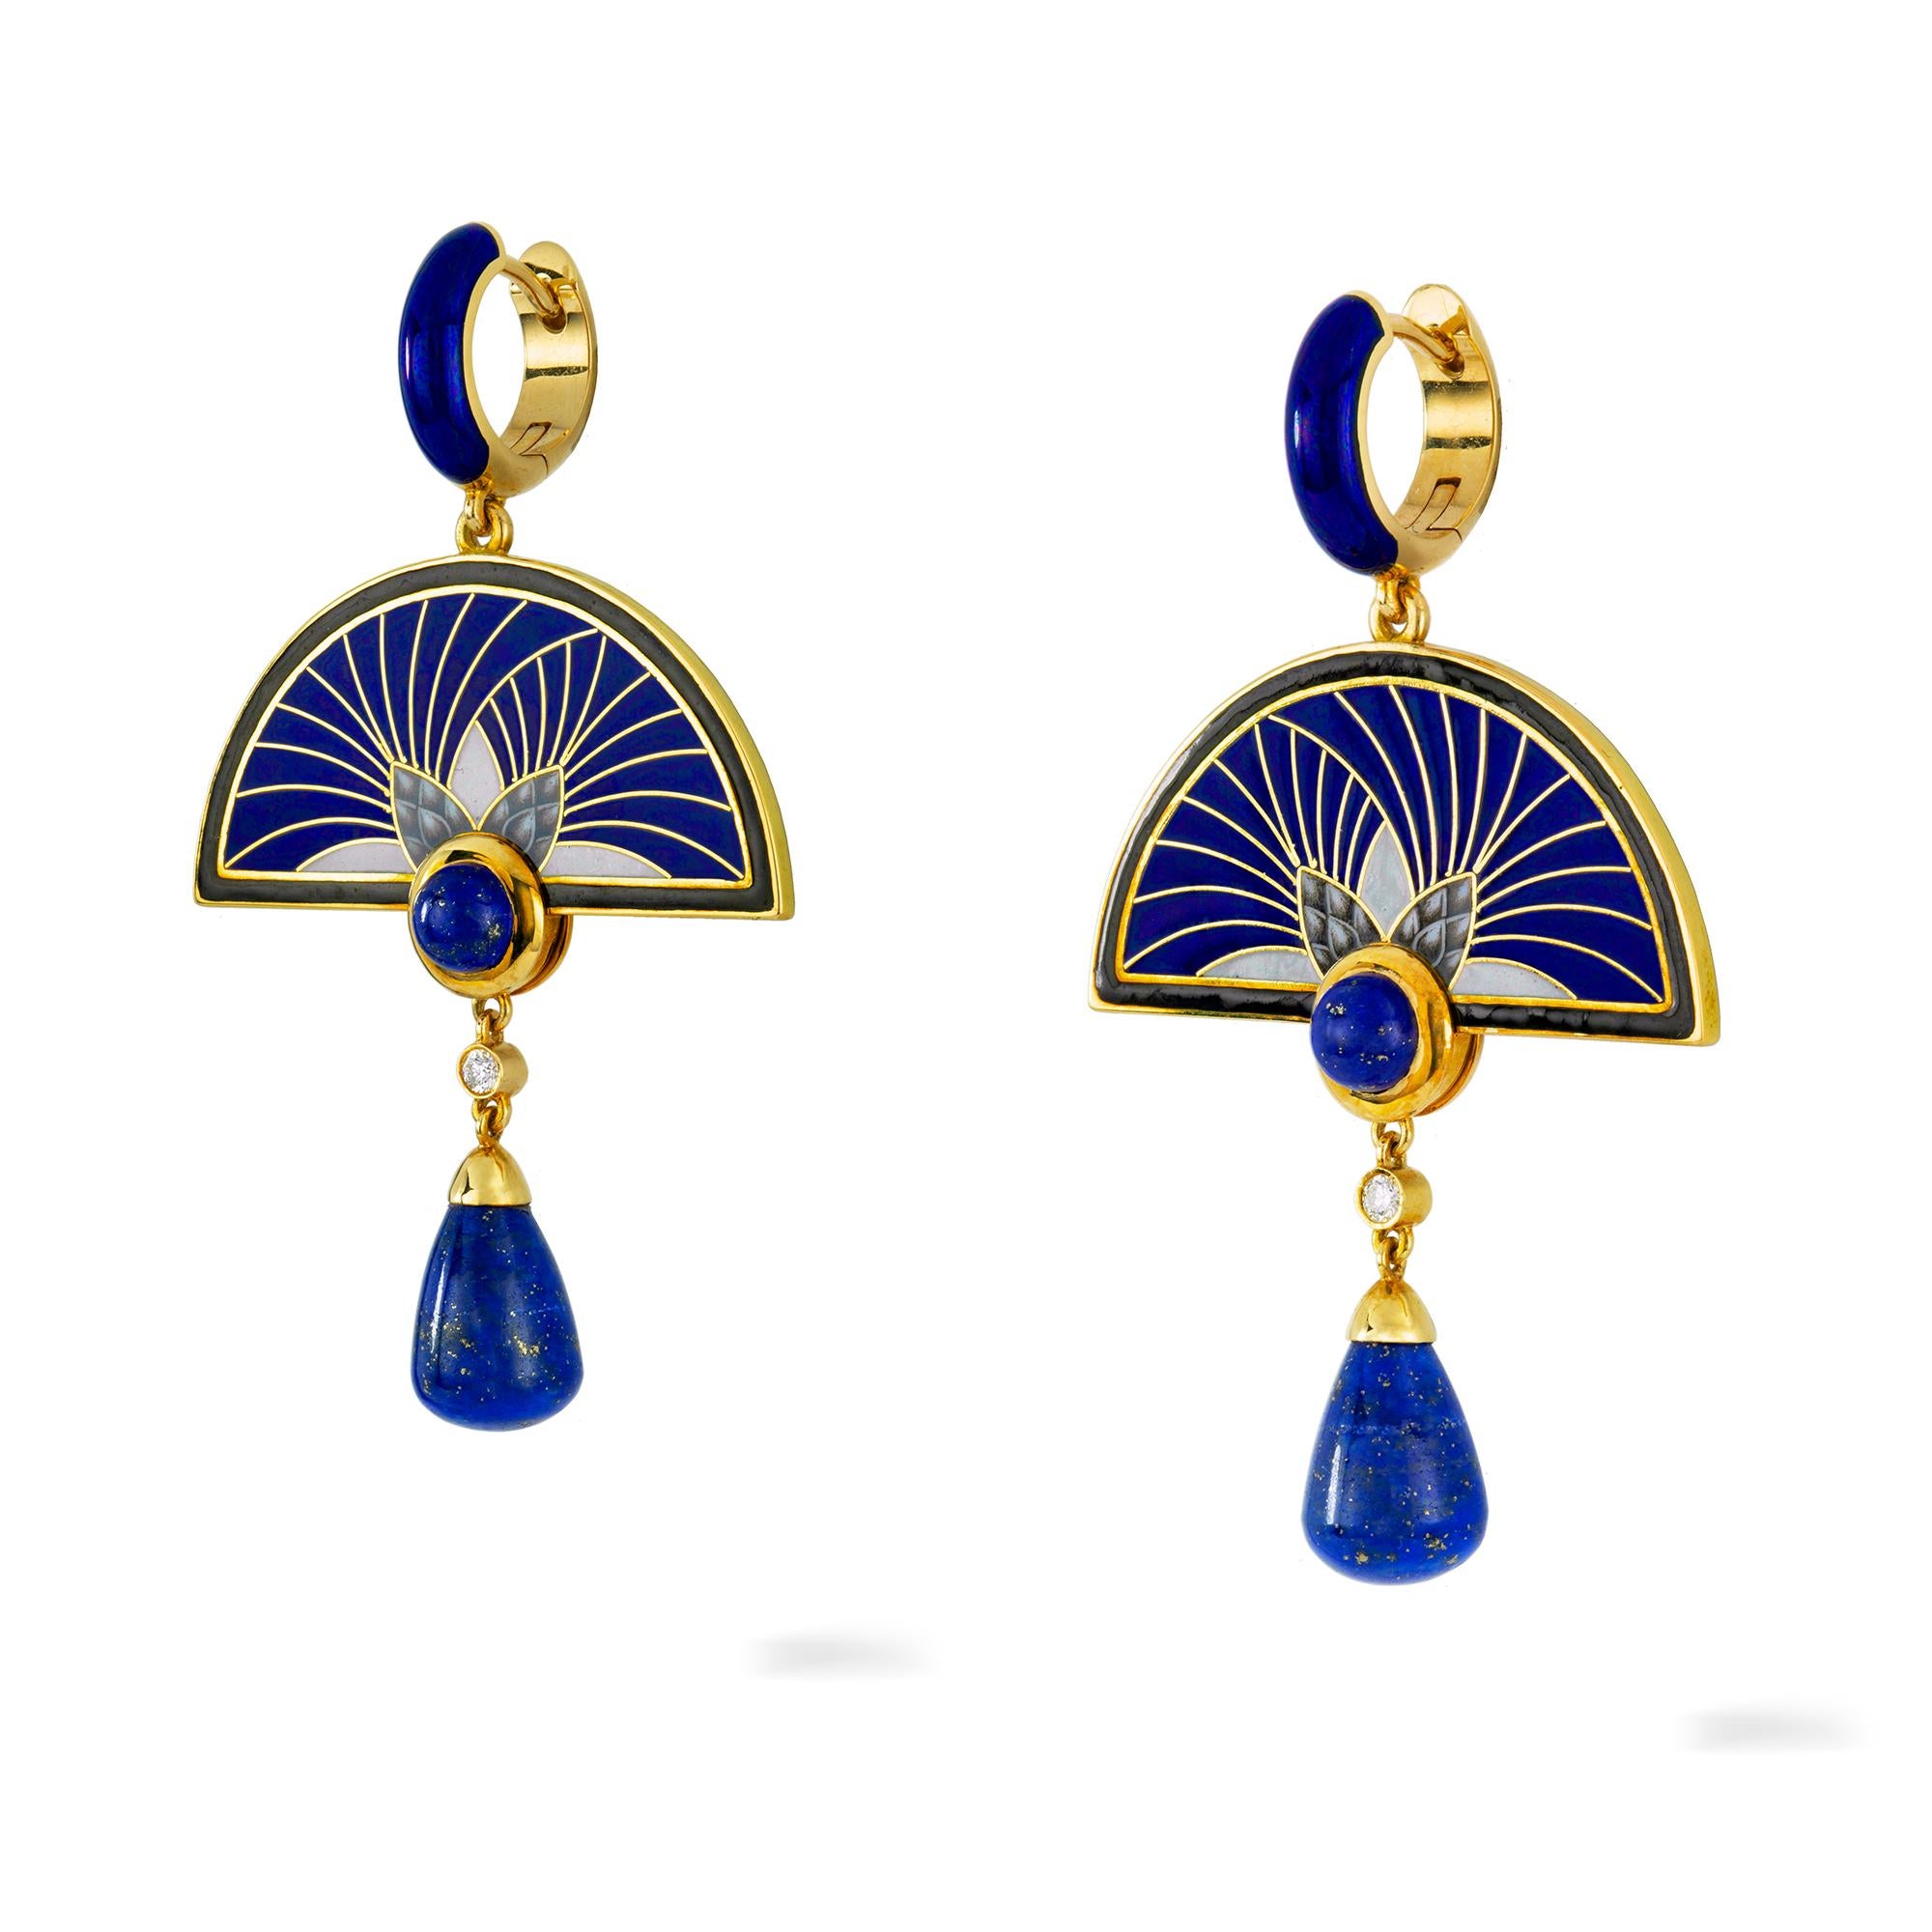 Ein Paar Kletten-Ohrringe von Ilgiz F., jeweils mit einer halbkreisförmigen emaillierten Platte, auf der zwei Kletten abgebildet sind, besetzt mit einem runden Lapis-Cabochon und einem Diamant- und Lapis-Tropfen, aufgehängt an einer blau